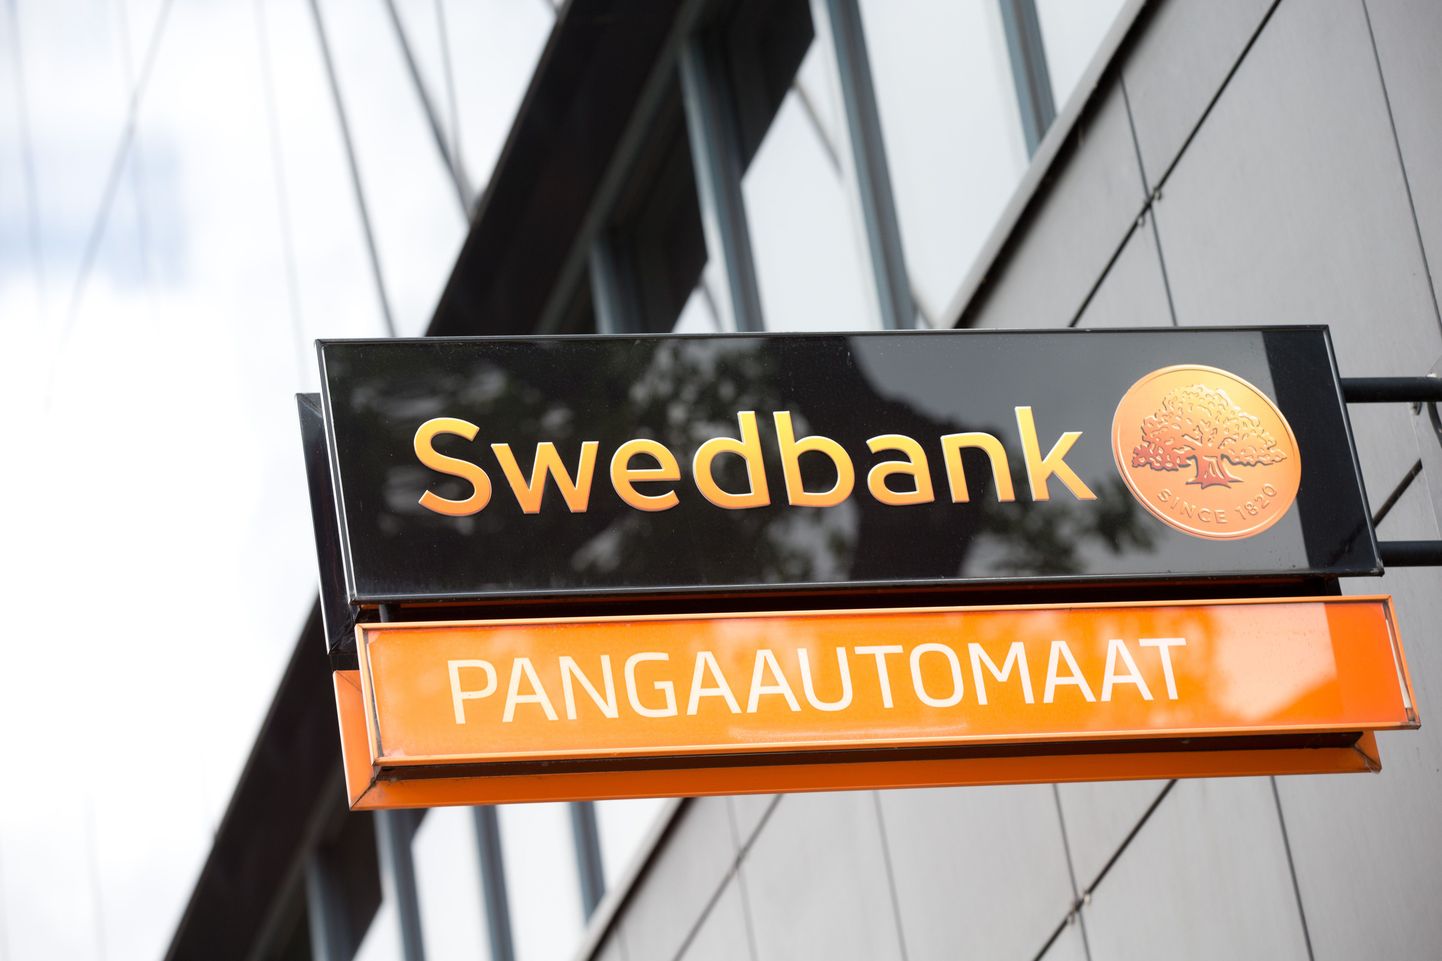 Иллюстративный снимок. Банкомат Swedbank.